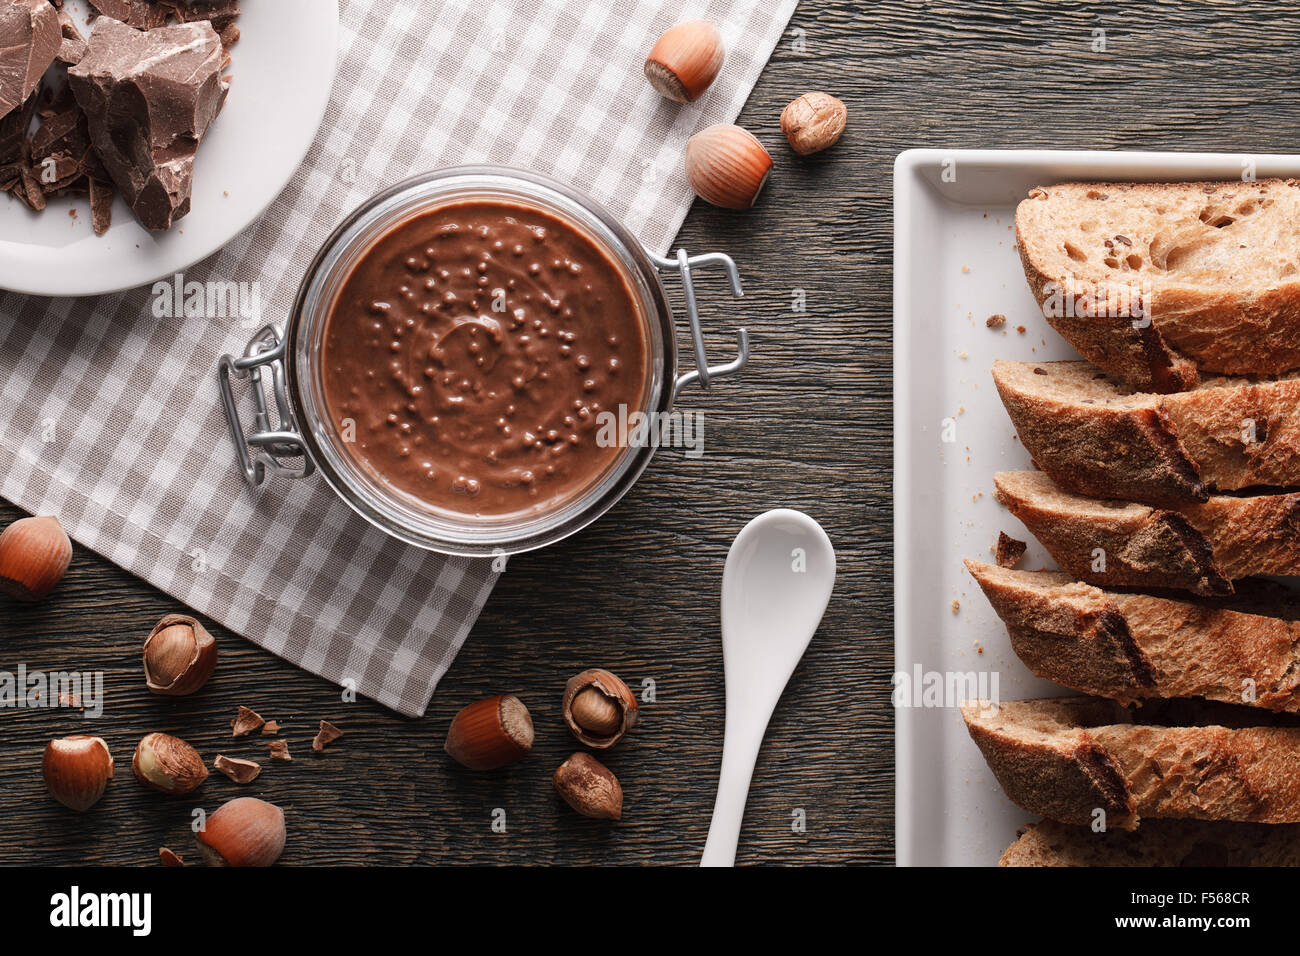 Hazelnut spread with nuts pieces Stock Photo